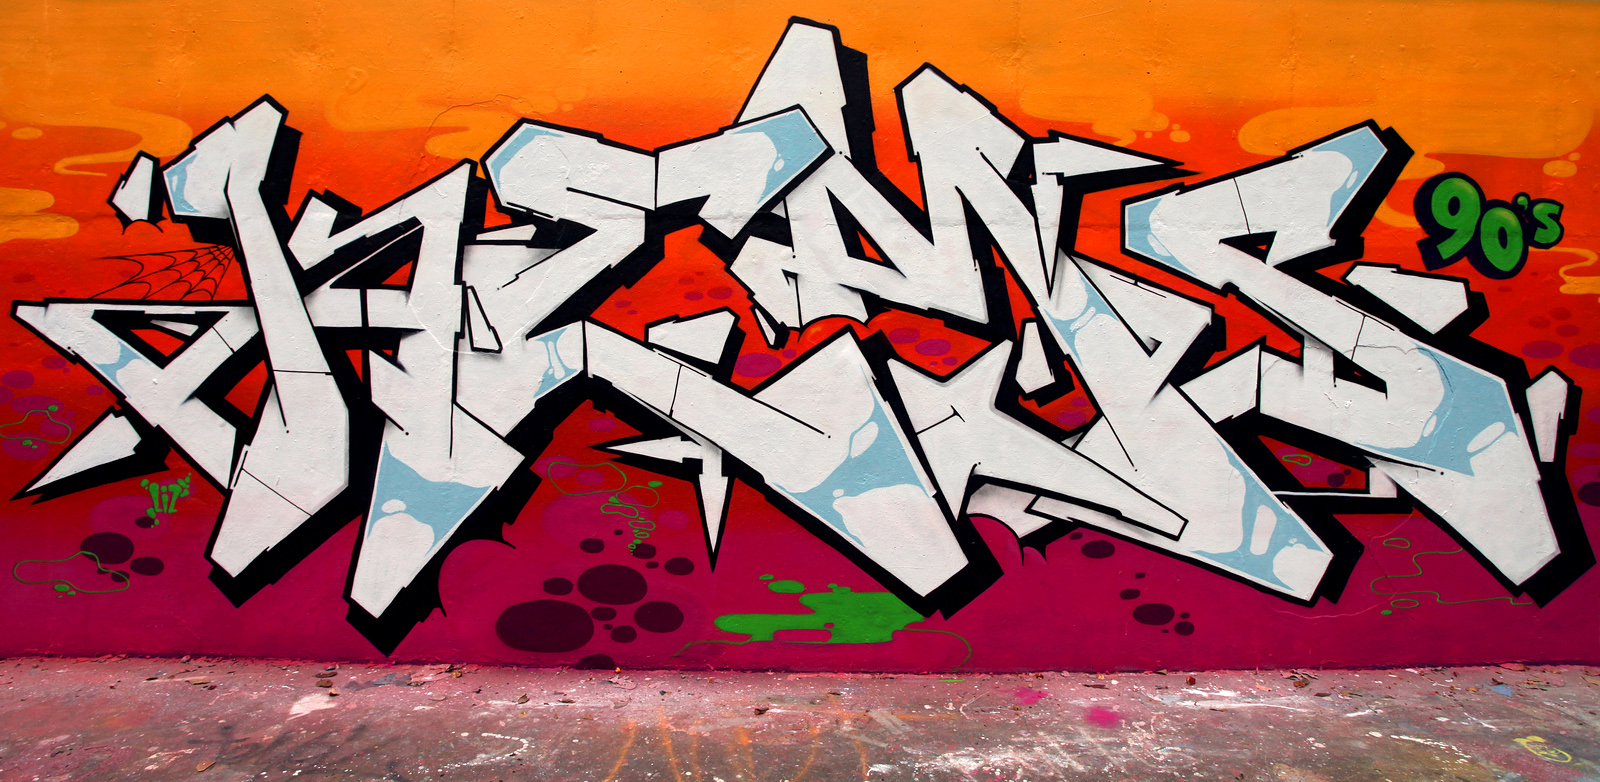 Atlanta, GES, TOTEM, Kems, graffiti, Ironlak